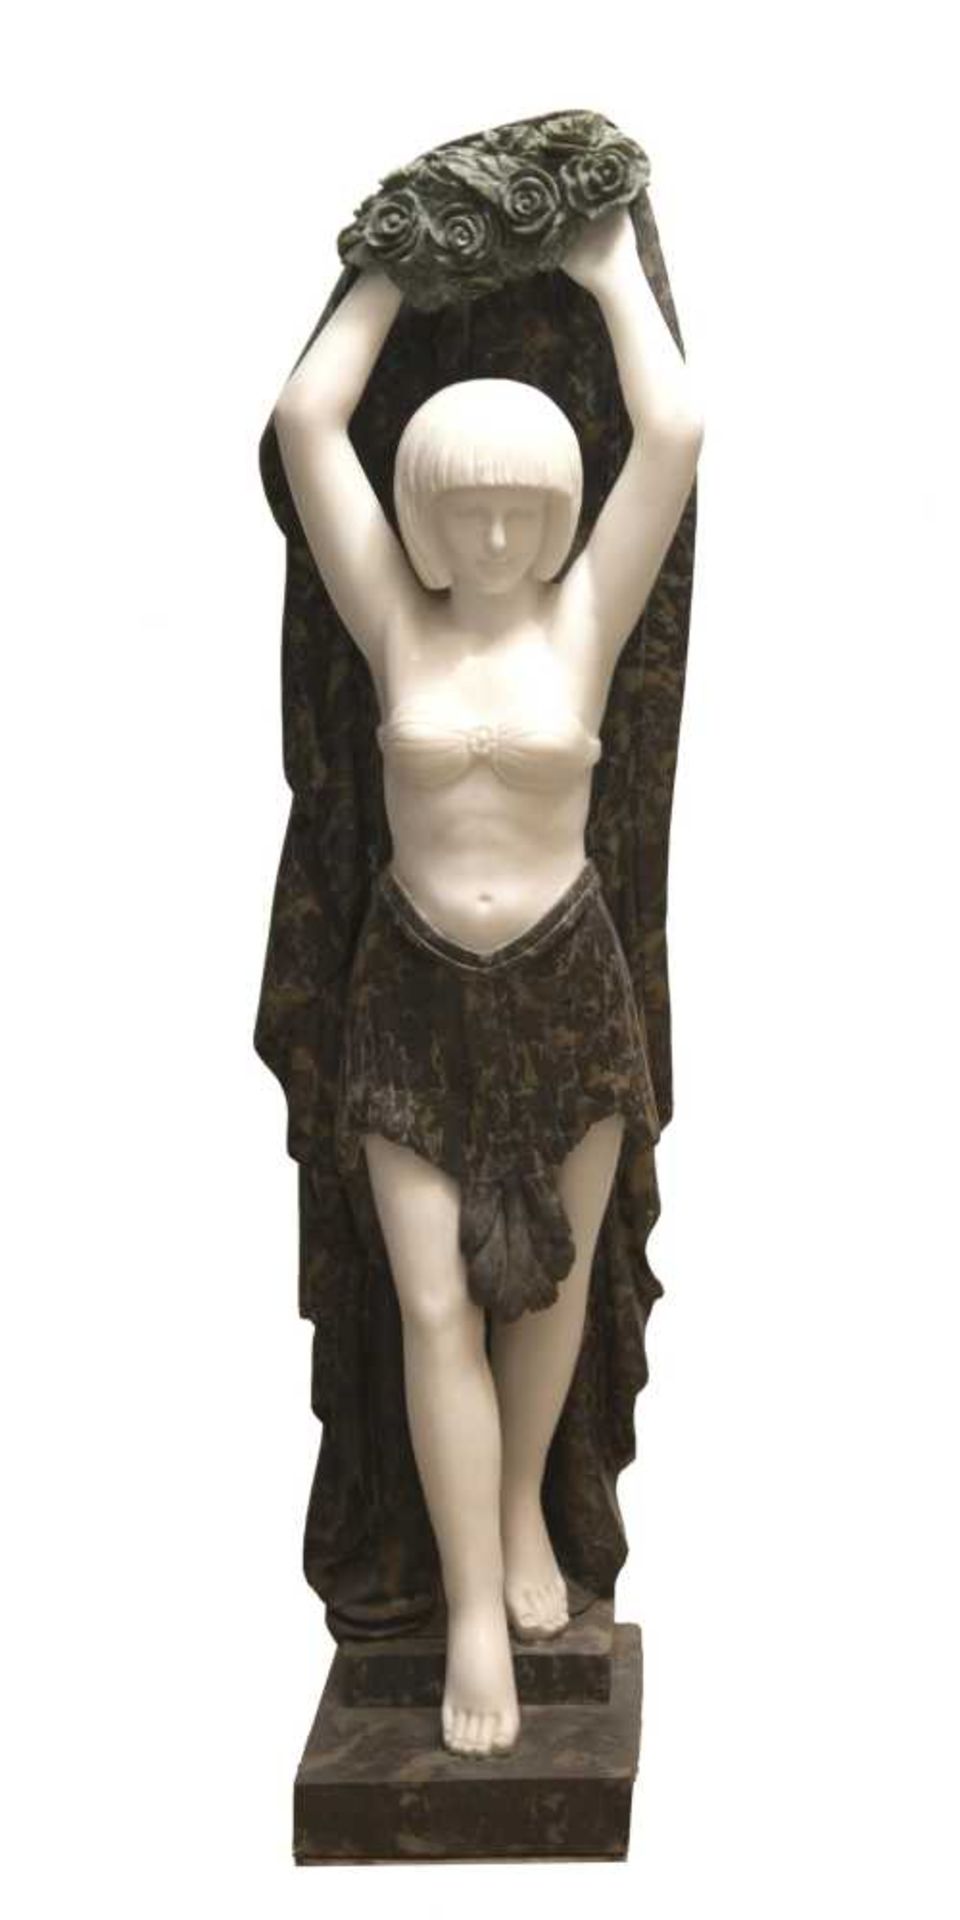 statue de style Art déco en 3 marbres représentant une femme descendant des marches et se couvrant